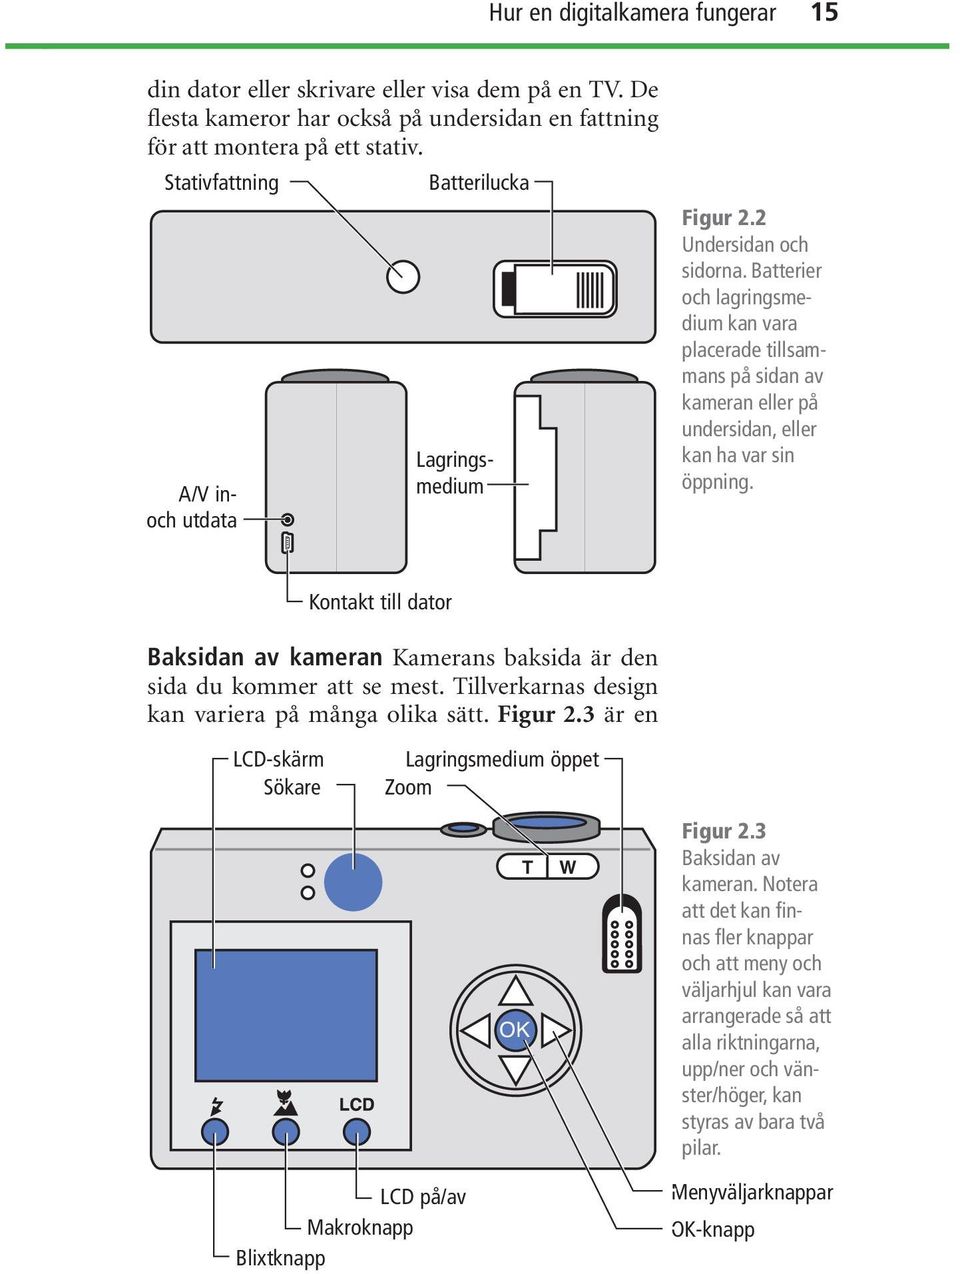 Batterier och lagringsmedium kan vara placerade tillsammans på sidan av kameran eller på undersidan, eller kan ha var sin öppning.